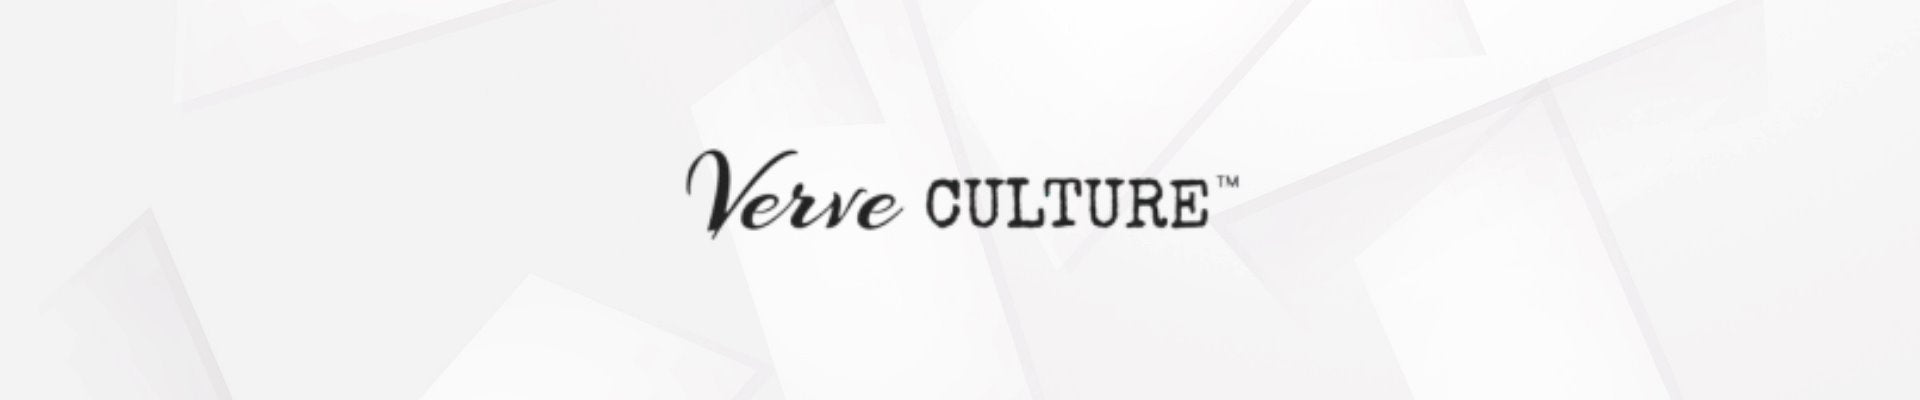 Verve Culture - Kitchen & Home Goods